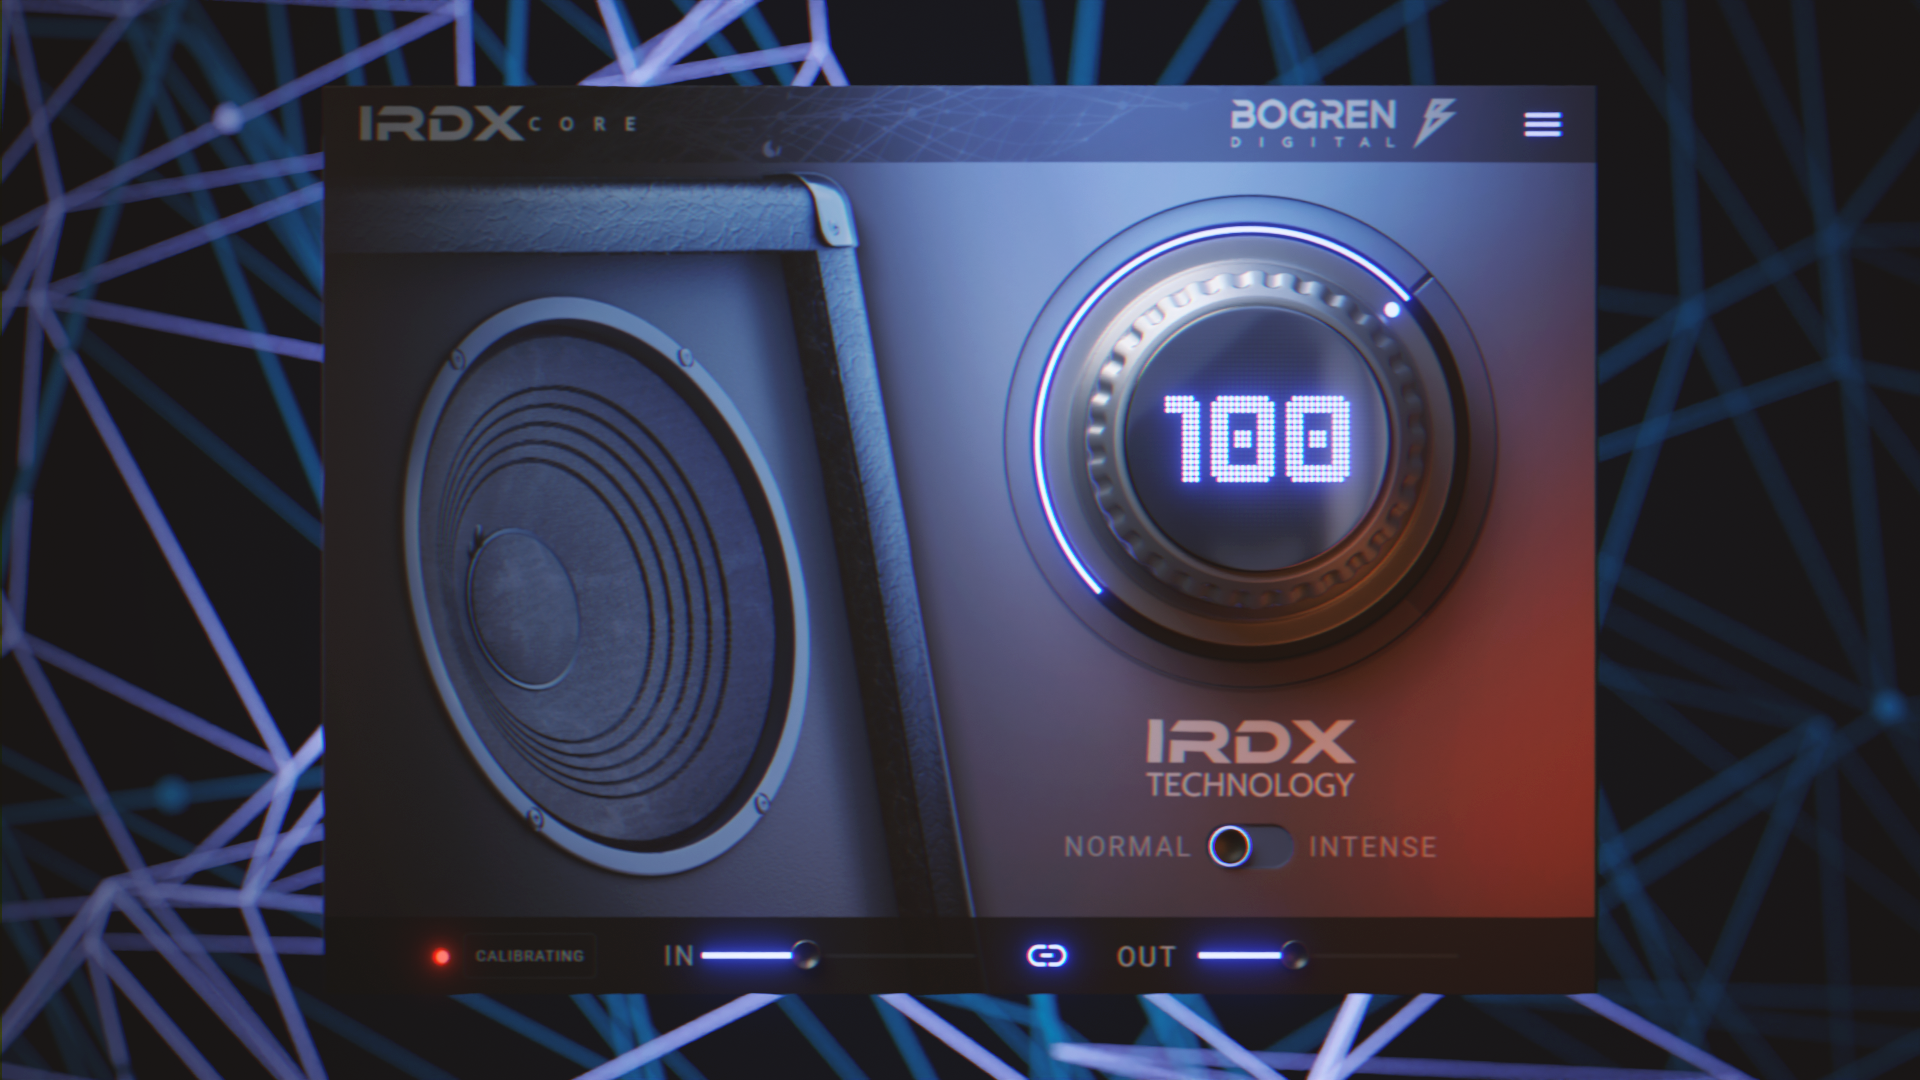 Bogren Digital - IRDX Core